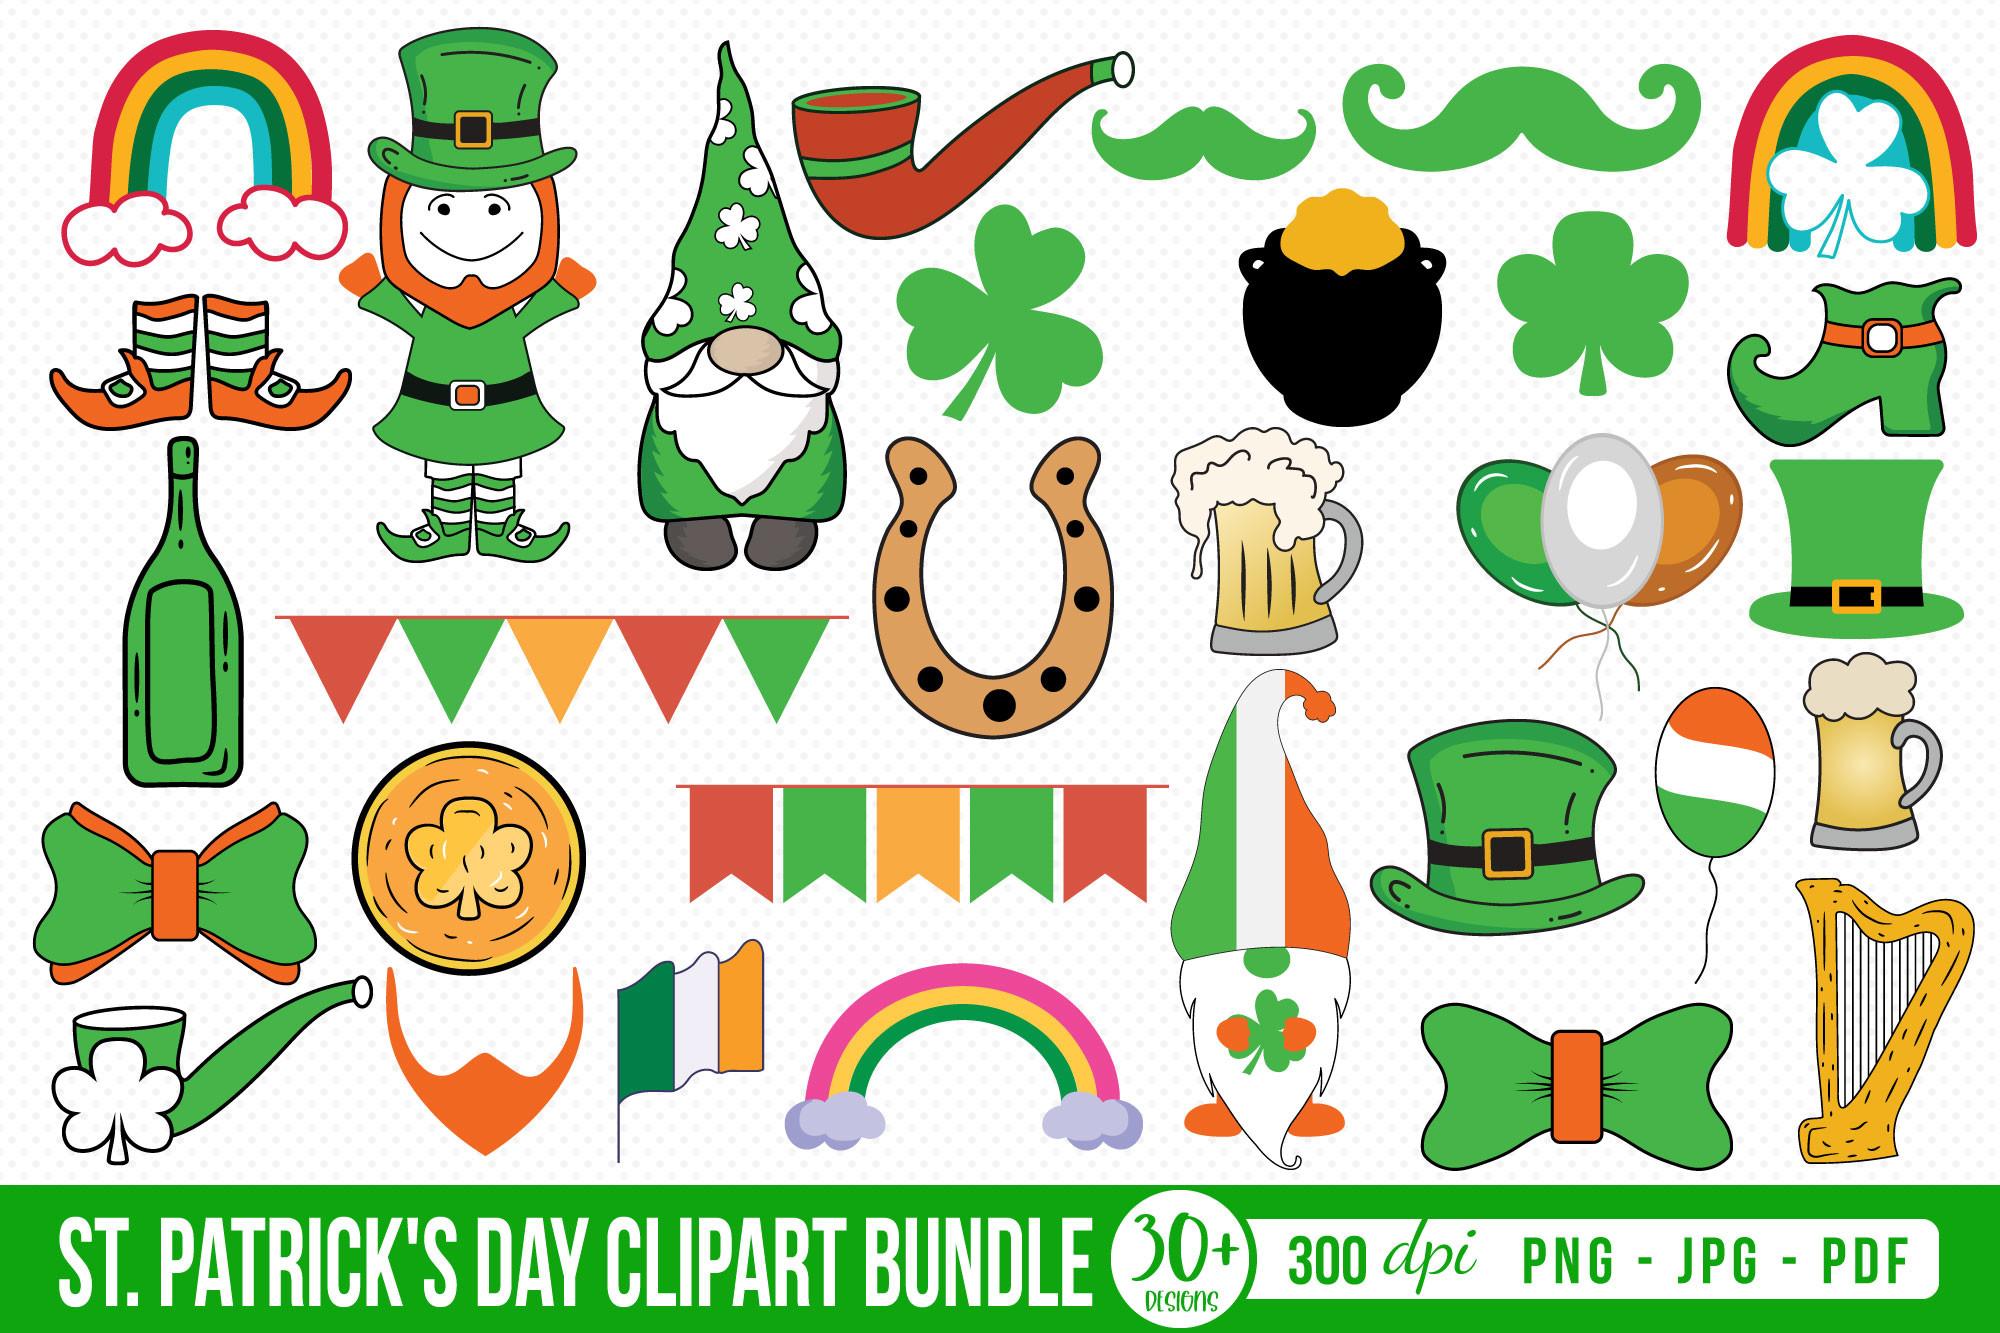 St. Patrick's Day Clipart Bundle